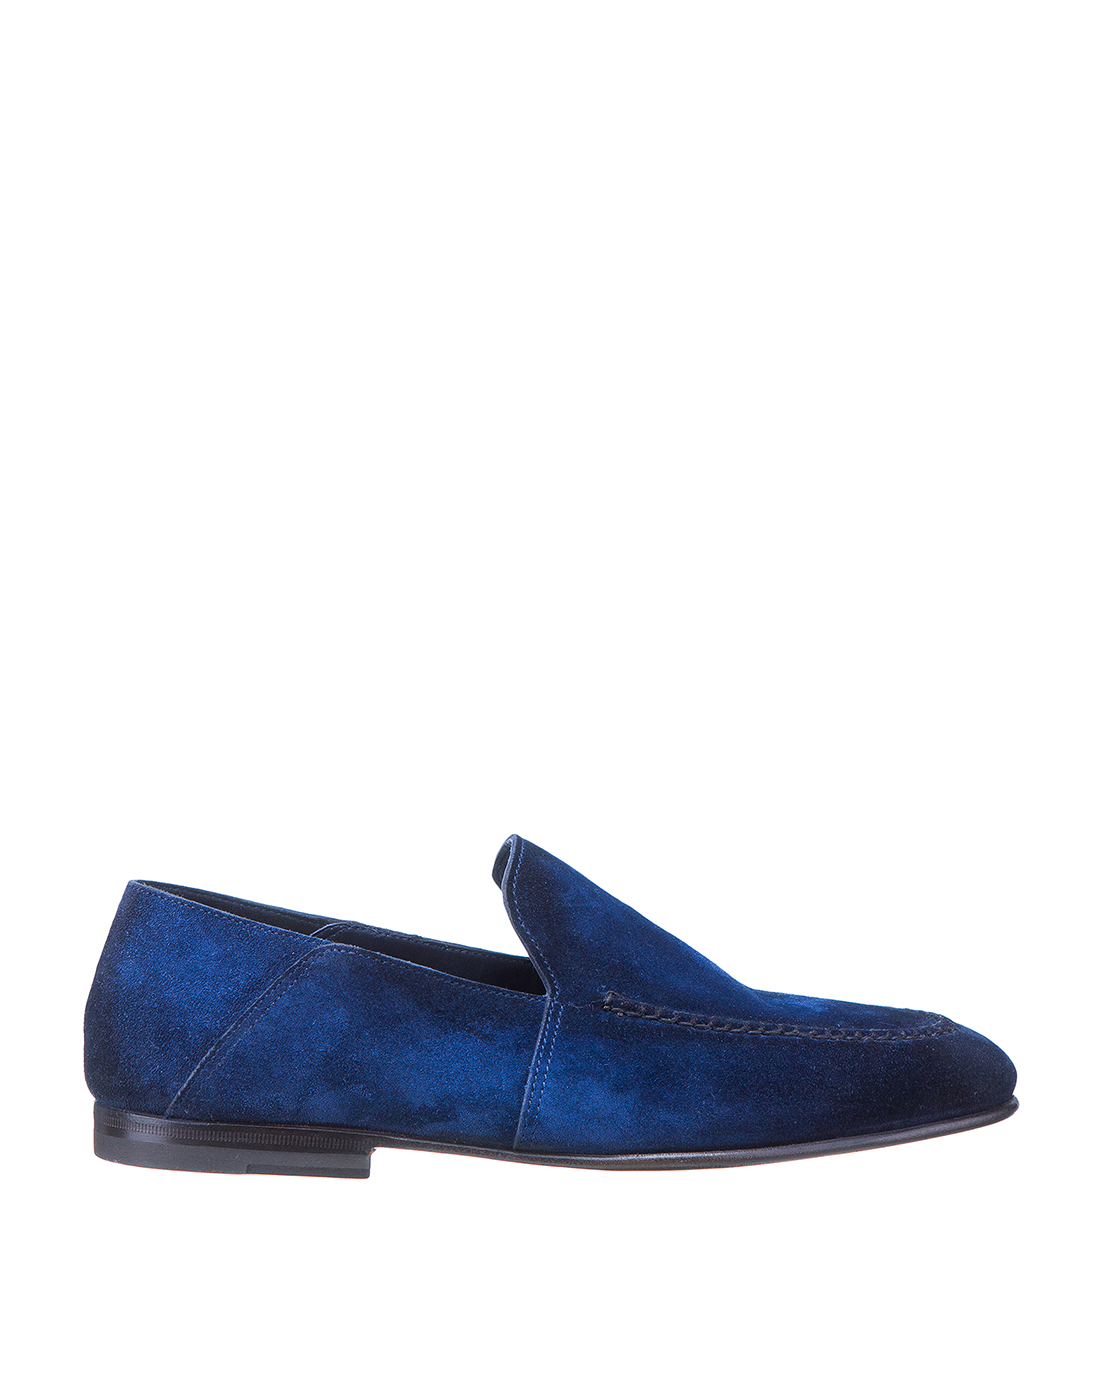 Туфли синие замшевые мужские Santoni SMCNC16048SA3SRVLU43-1